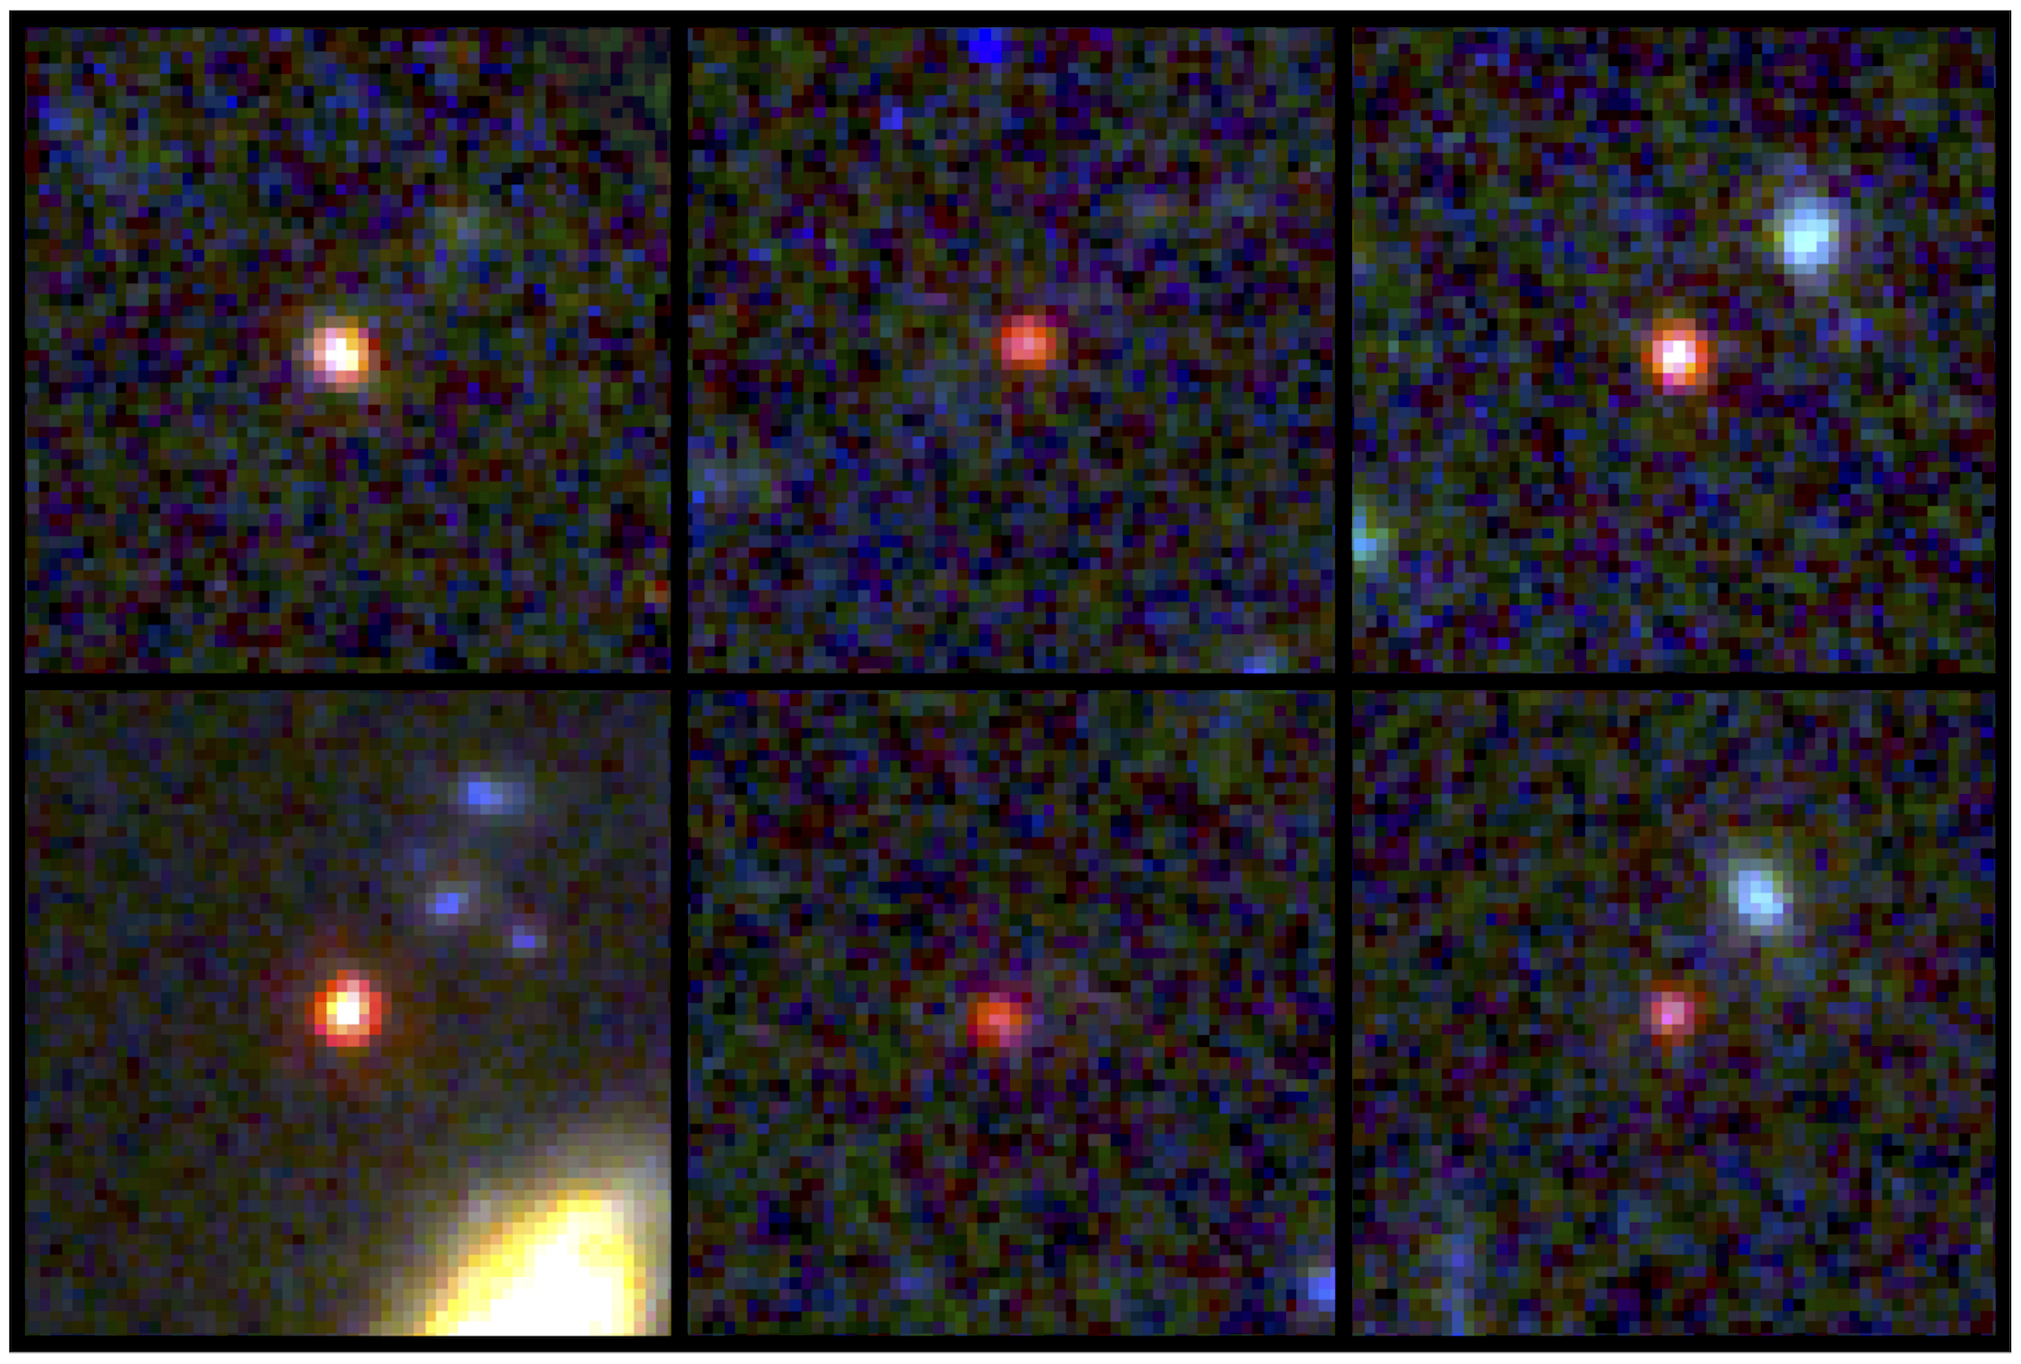 拚图)韦伯望远镜探测到古代“宇宙破坏者”星系存在证据 可能颠覆当前理论